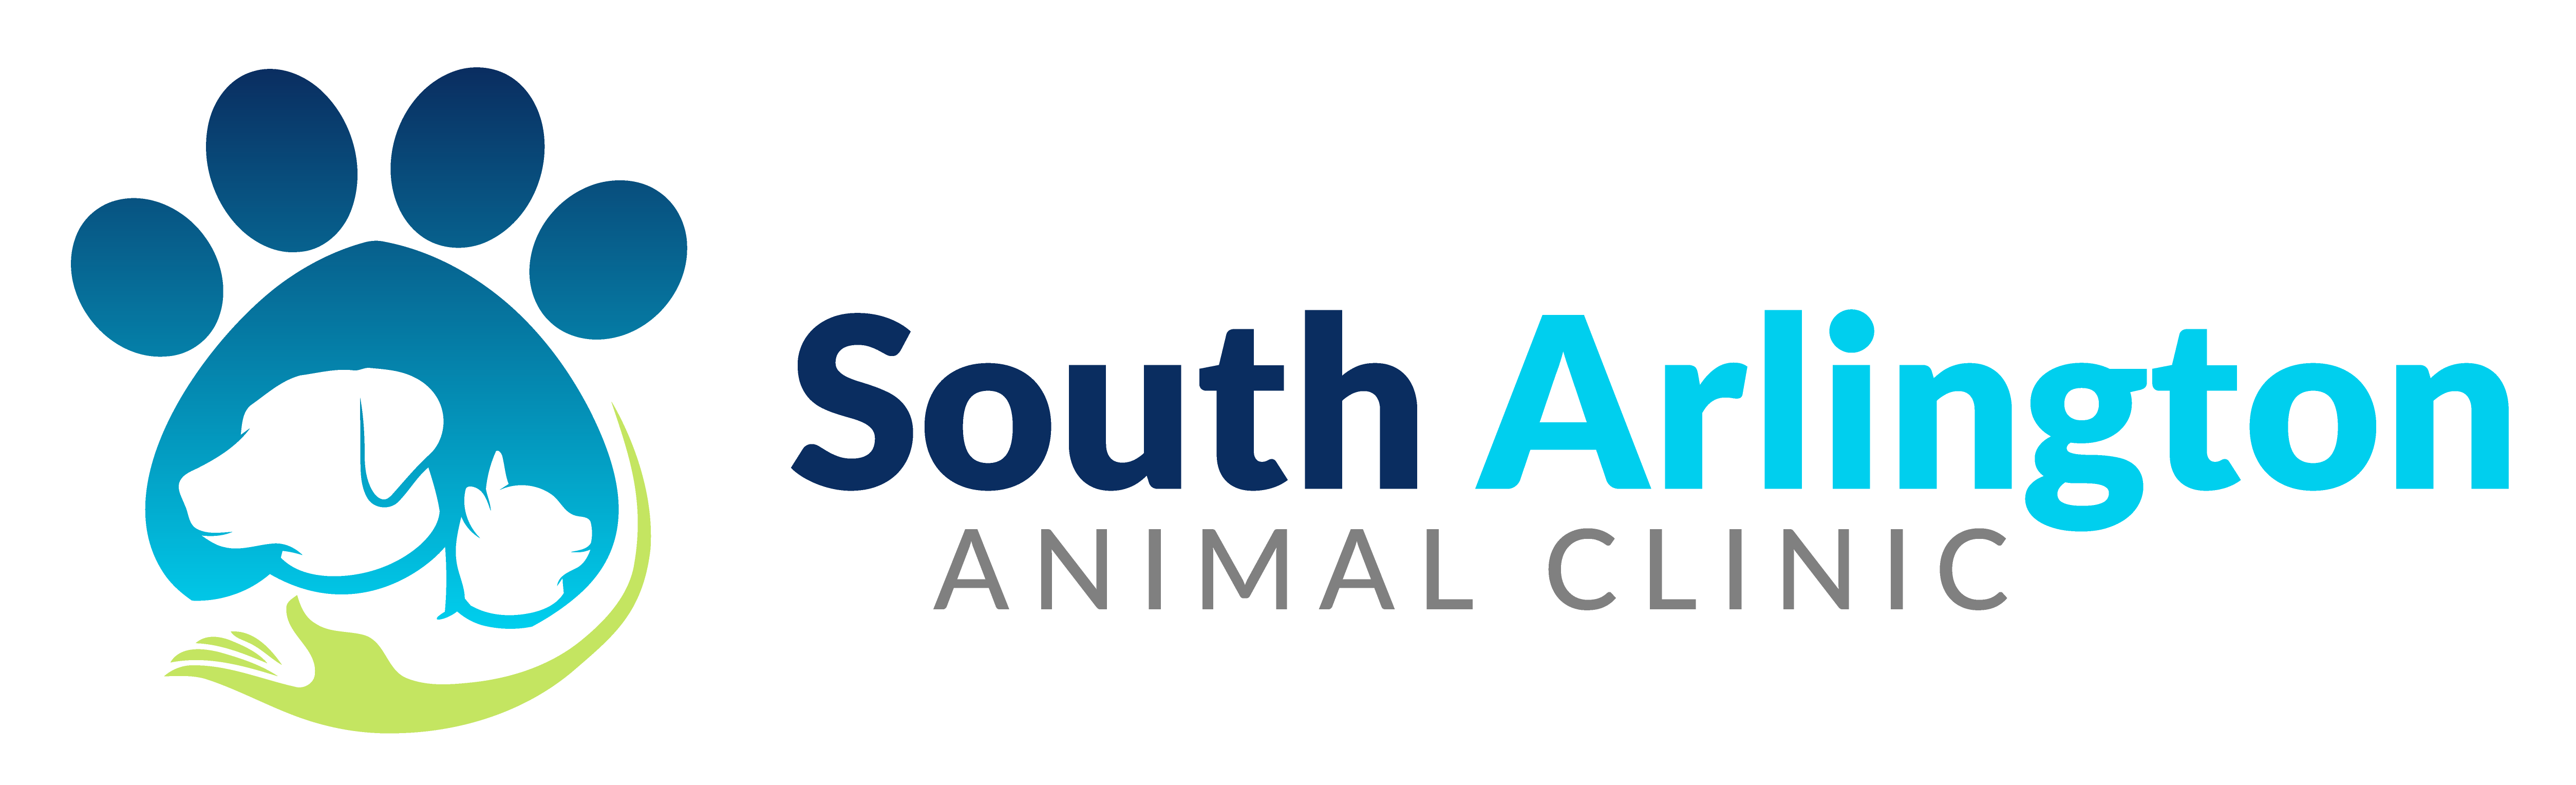 South Arlington Animal Clinic